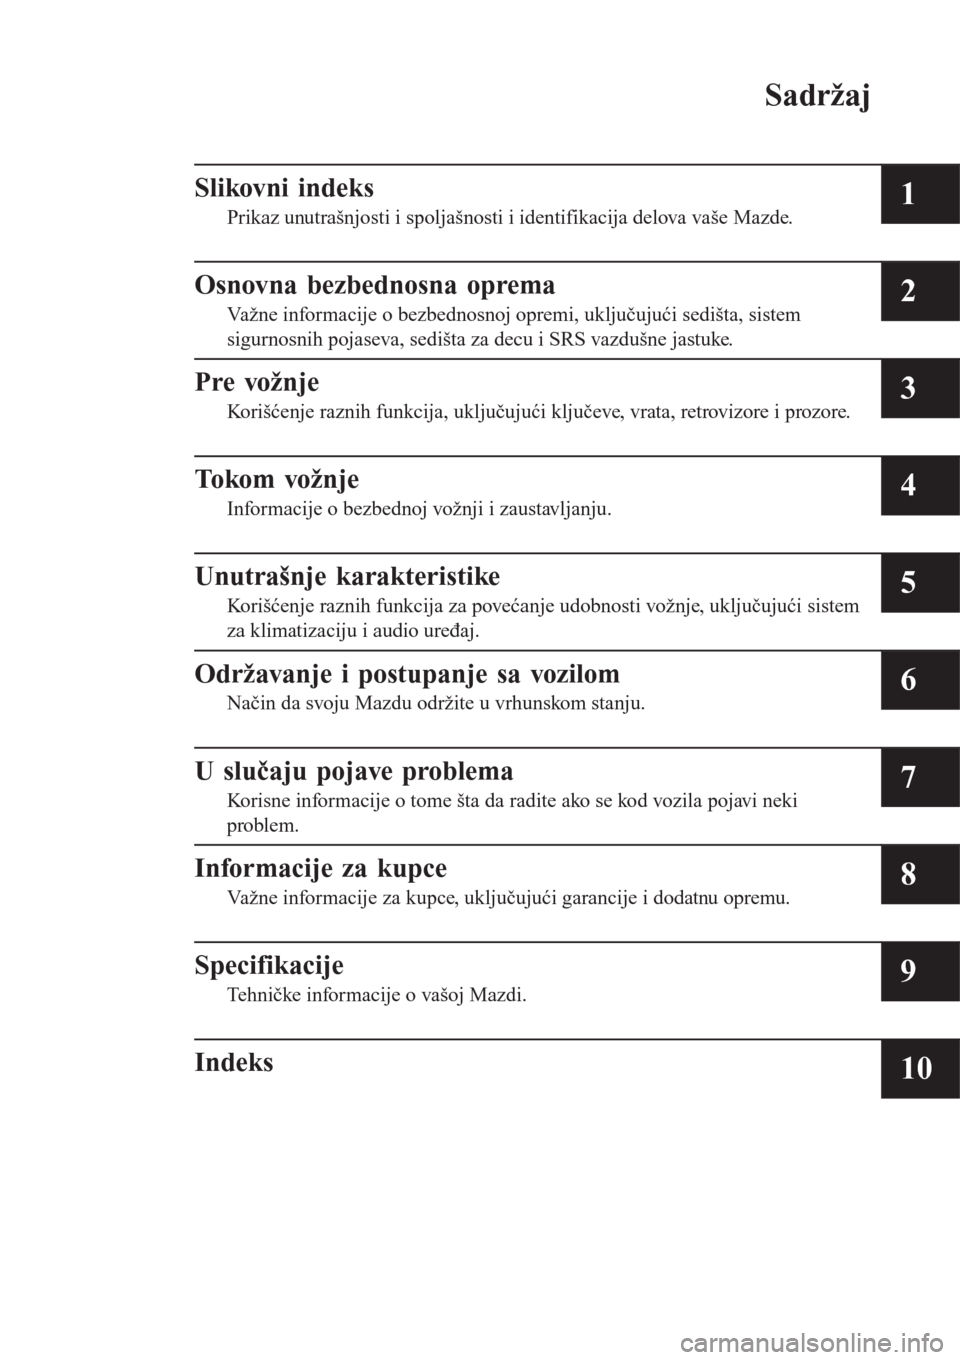 MAZDA MODEL 3 HATCHBACK 2015  Korisničko uputstvo (in Serbian) Sadržaj
Slikovni indeks
Prikaz unutrašnjosti i spoljašnosti i identifikacija delova vaše Mazde.1
Osnovna bezbednosna oprema
Važne informacije o bezbednosnoj opremi, uključujući sedišta, sistem